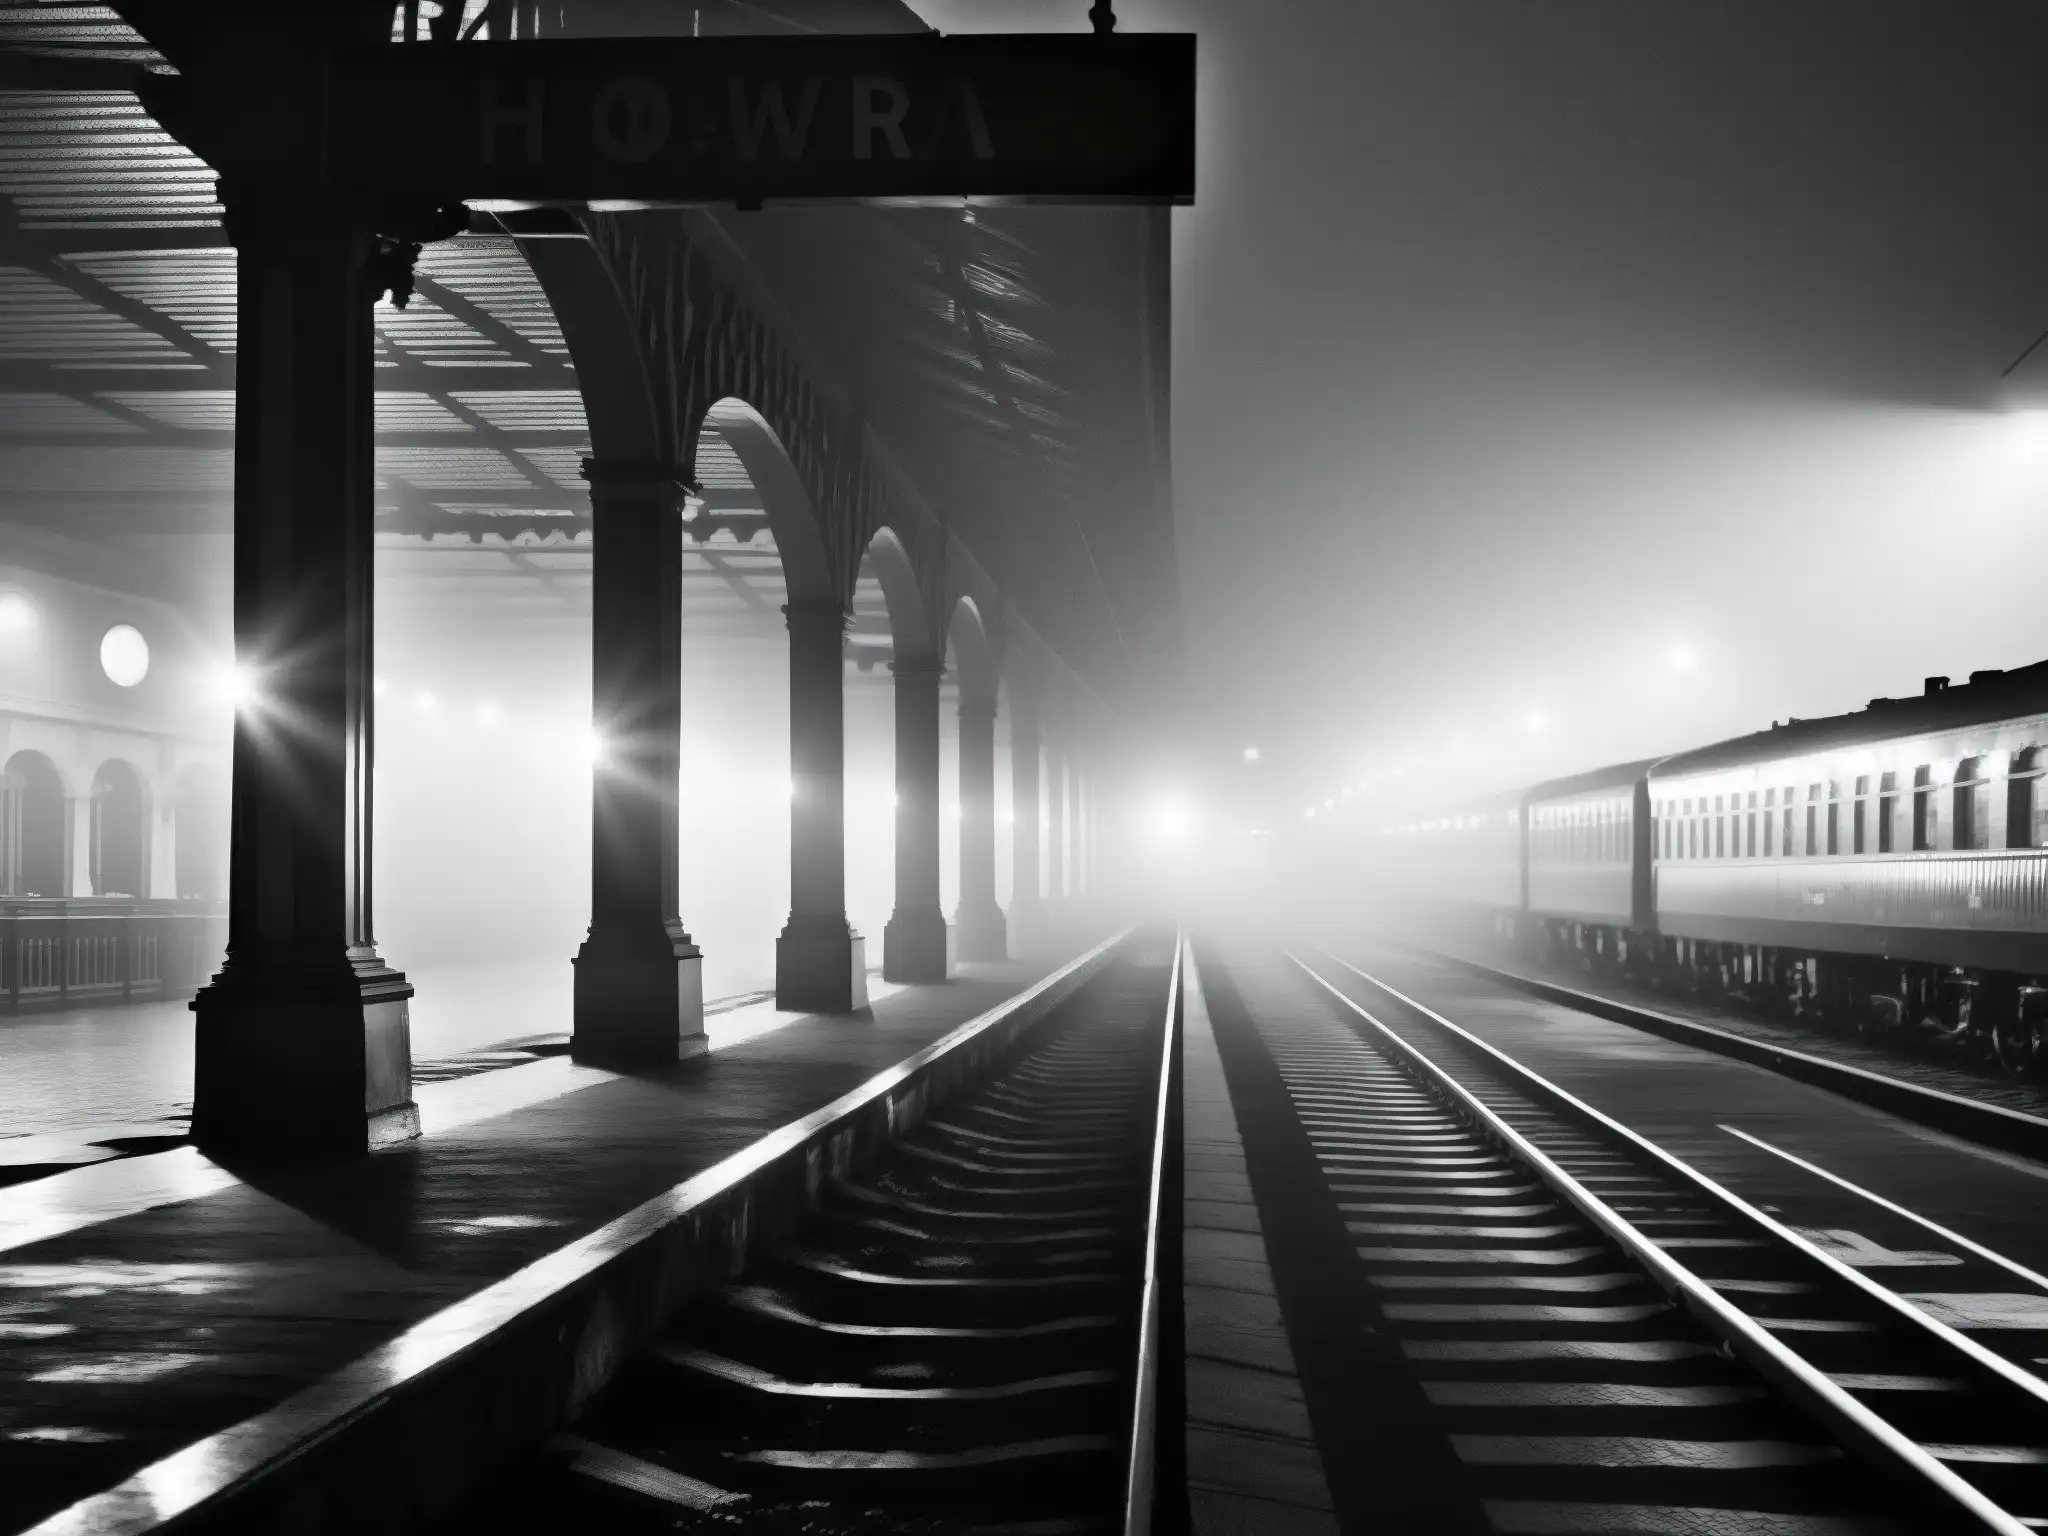 Una imagen en blanco y negro de la desierta estación de tren Howrah por la noche, con la misteriosa llegada del Tren Fantasma